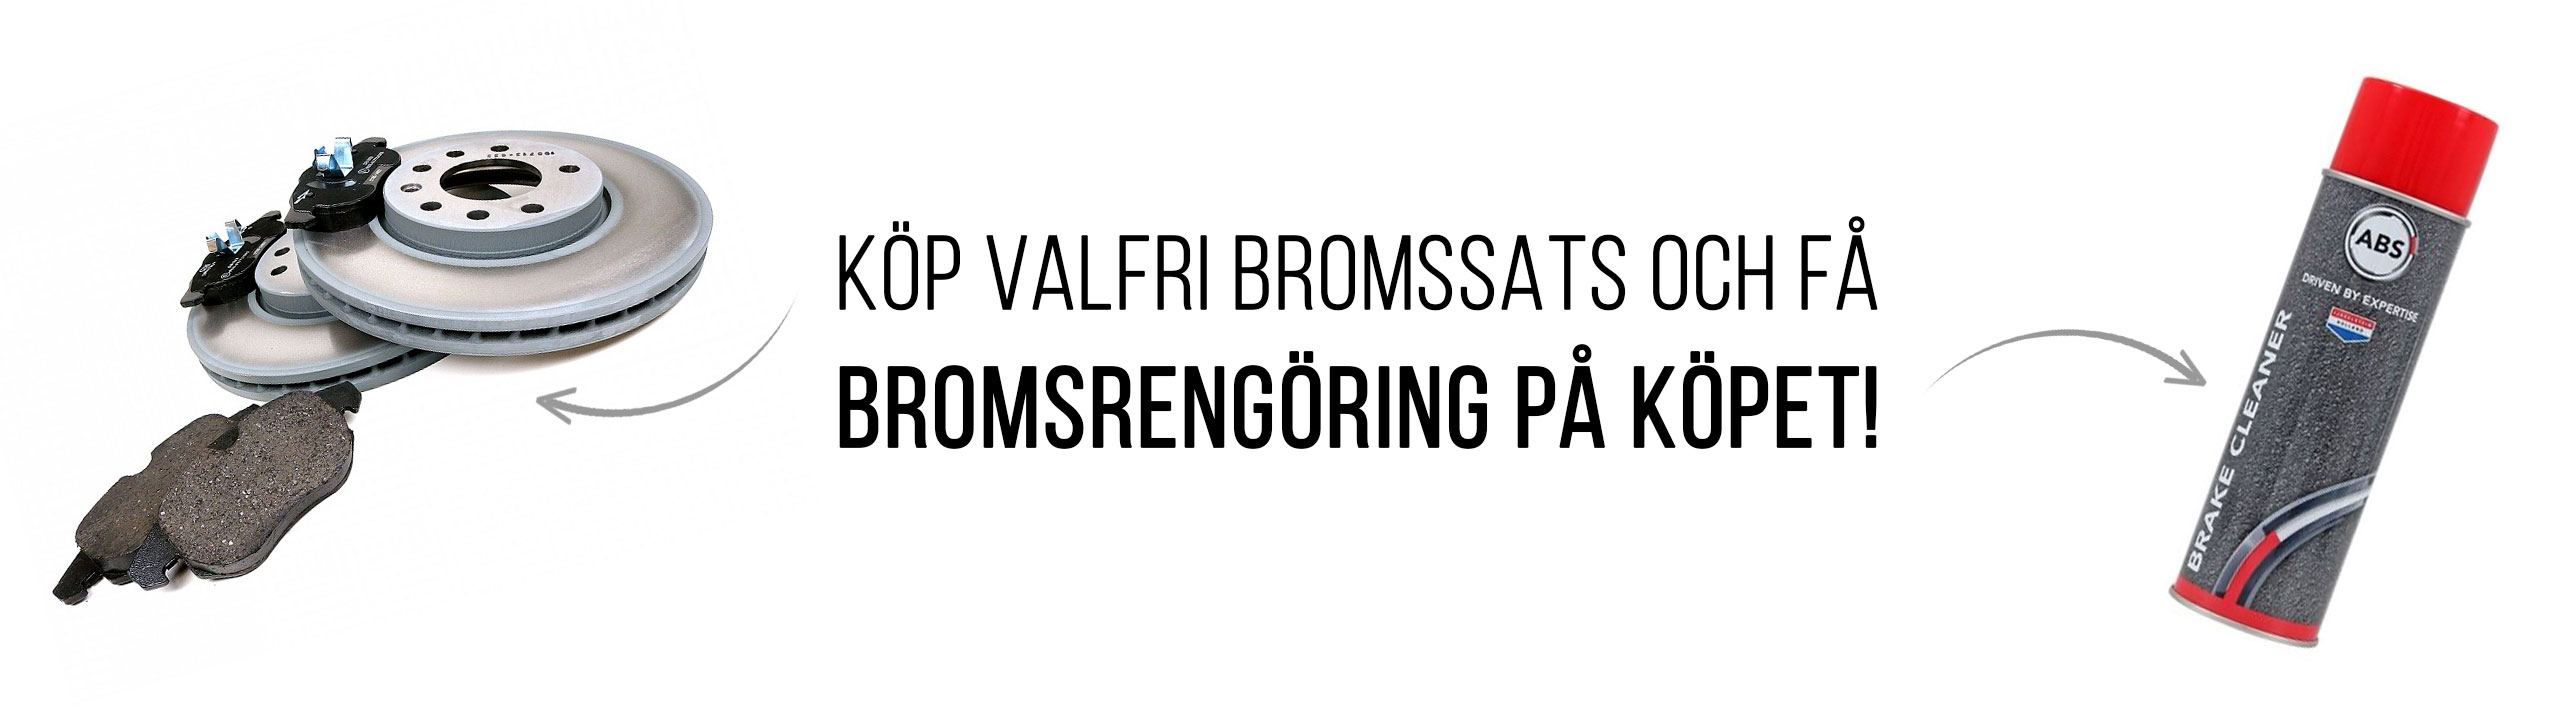 Kampanj Bromsrengöring